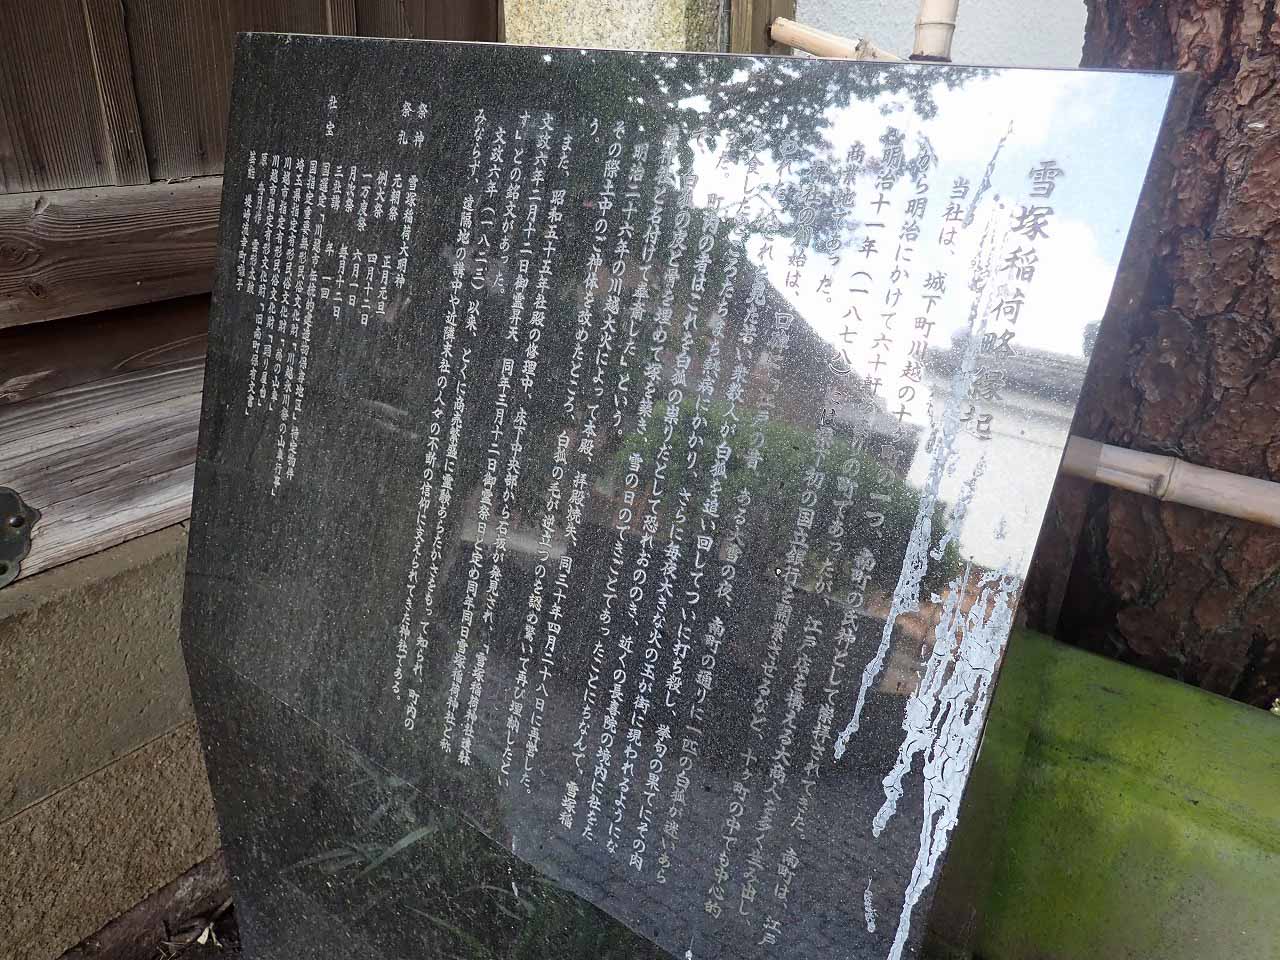 川越の有名な神社仏閣「雪塚稲荷神社」